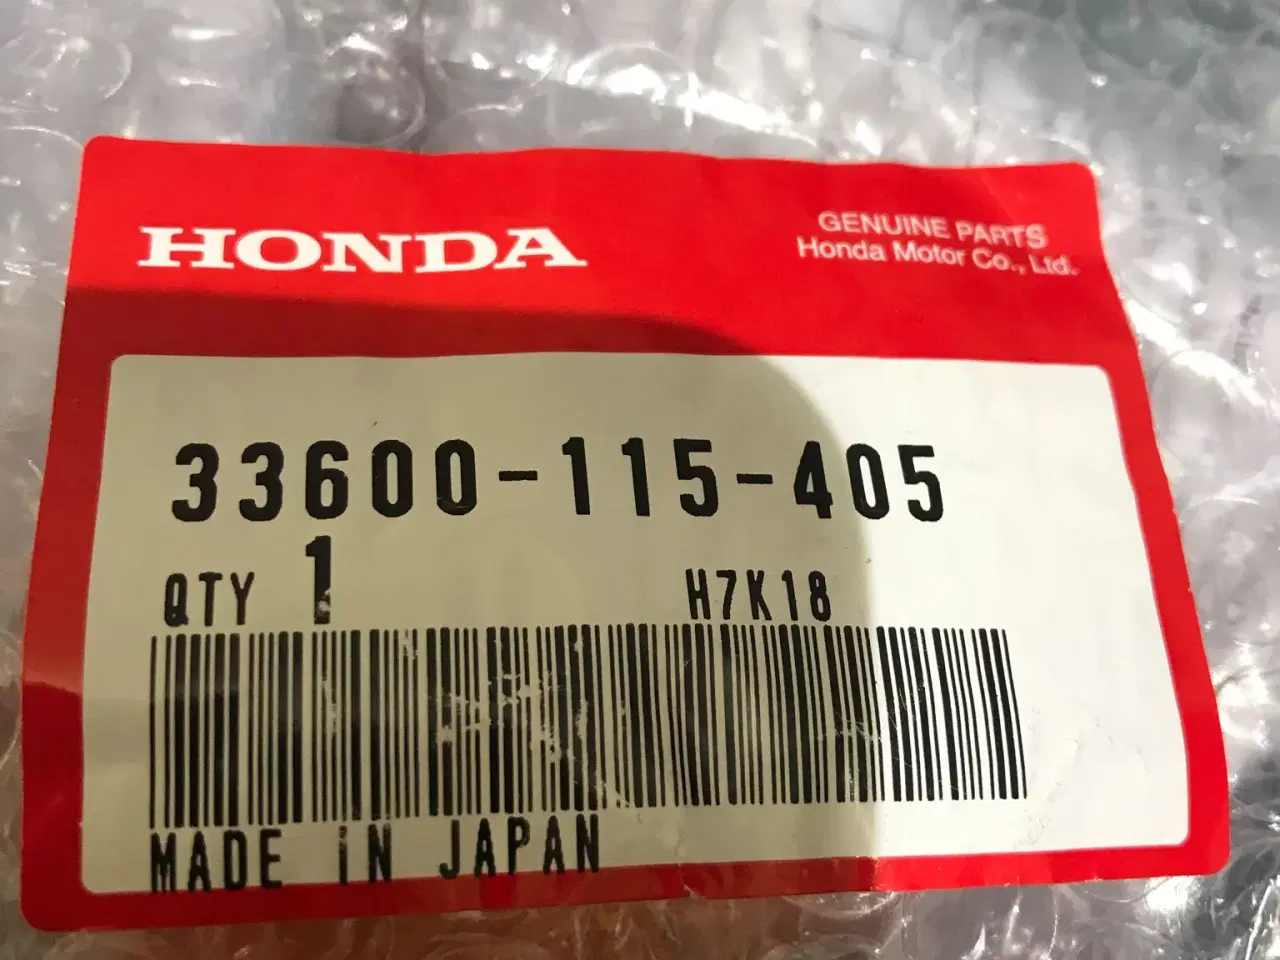 Billede 3 - Original blnklys til gamle Honda CD